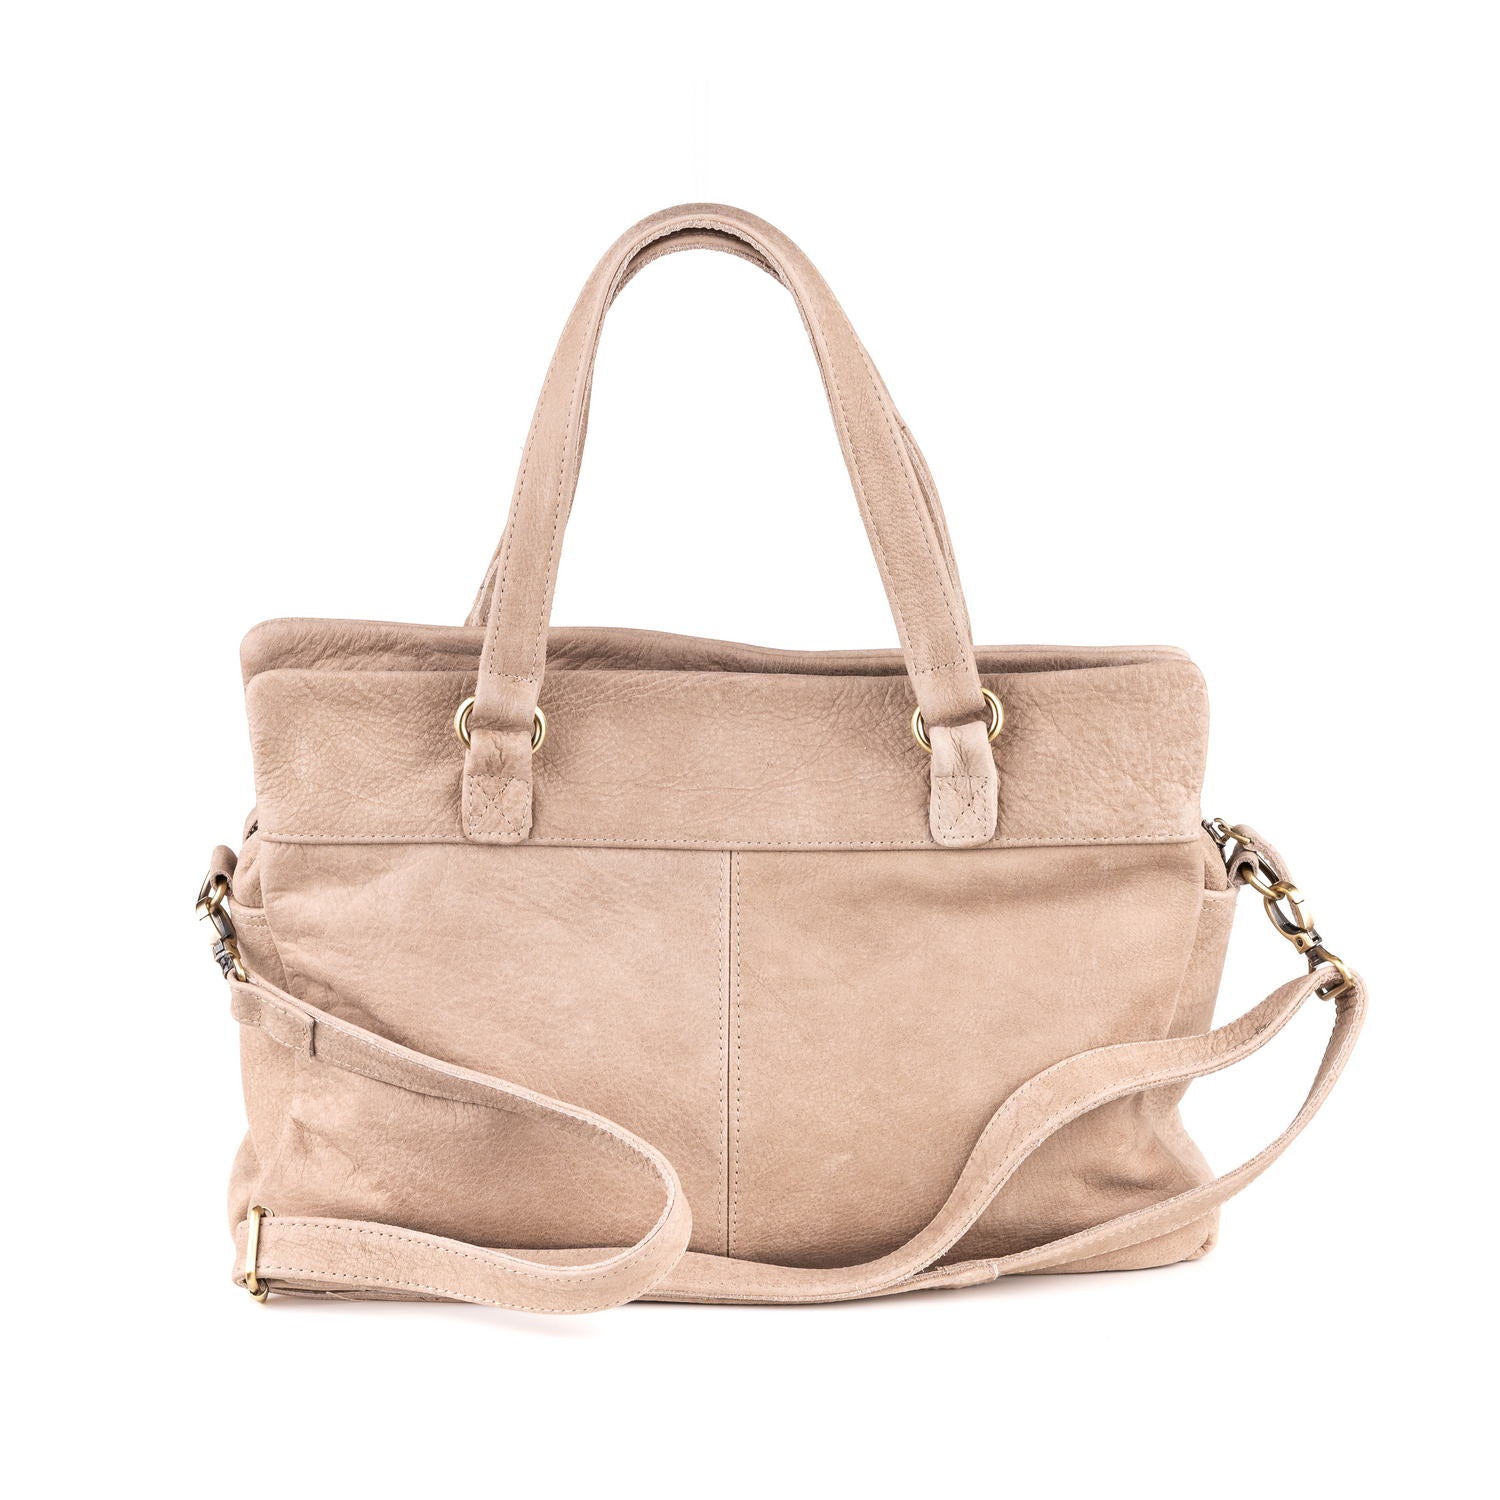 Arnhem Ladies Handbag Leather Walnut - Kenya Leather